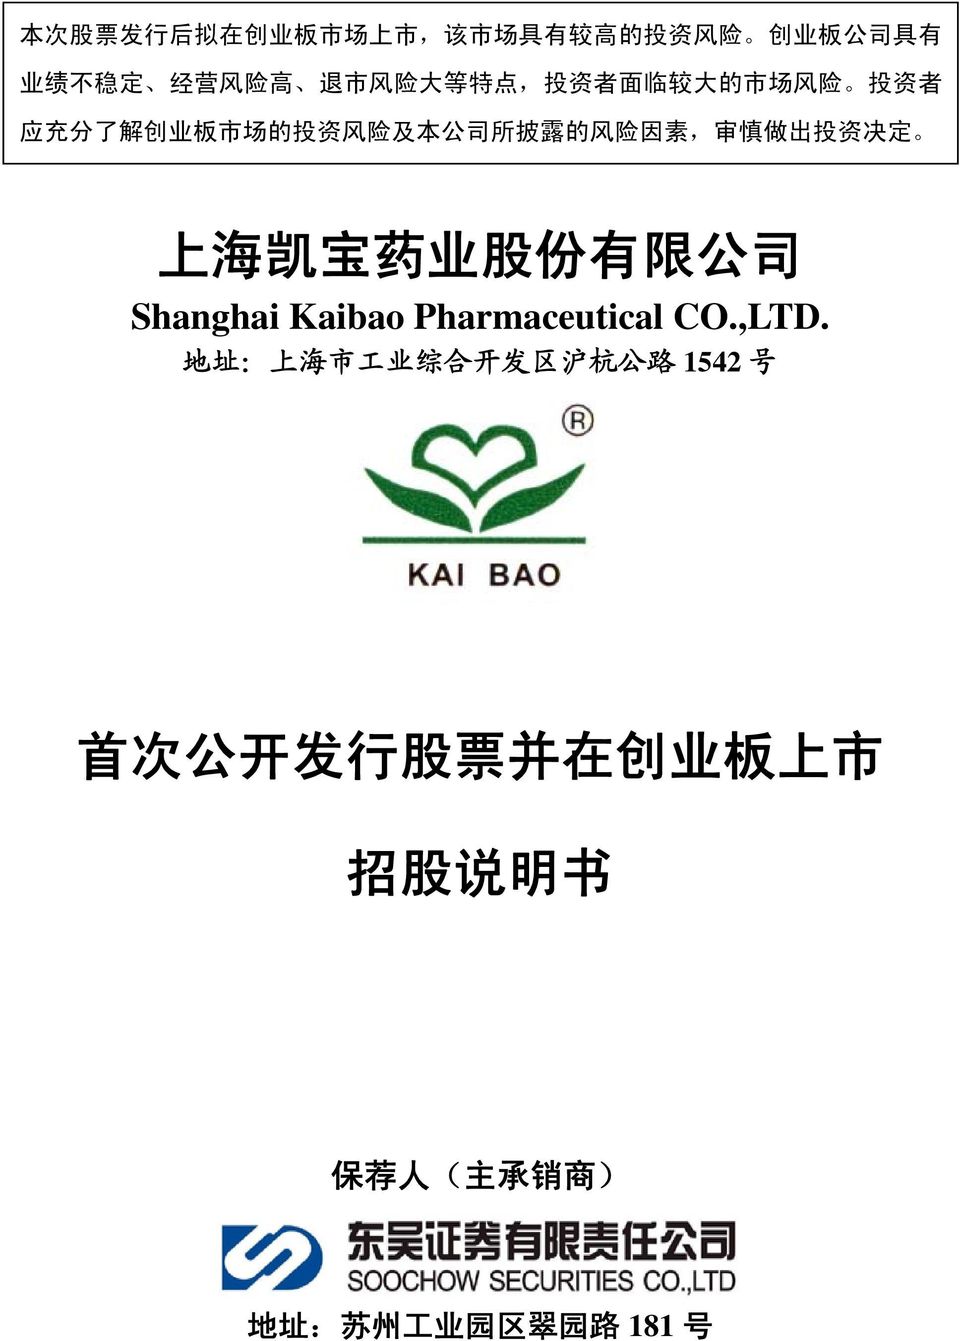 慎 做 出 投 资 决 定 上 海 凯 宝 药 业 股 份 有 限 公 司 Shanghai Kaibao Pharmaceutical CO.,LTD.